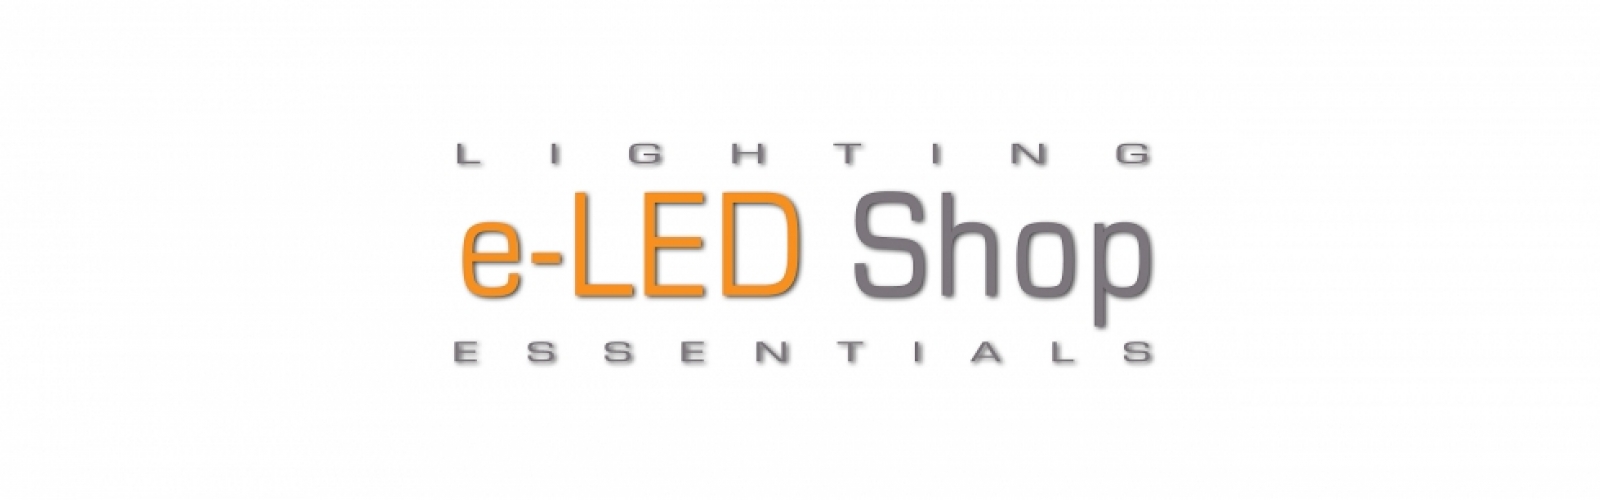 Eledshop.hu - Minőségi LED és Biogenis termékek webáruháza